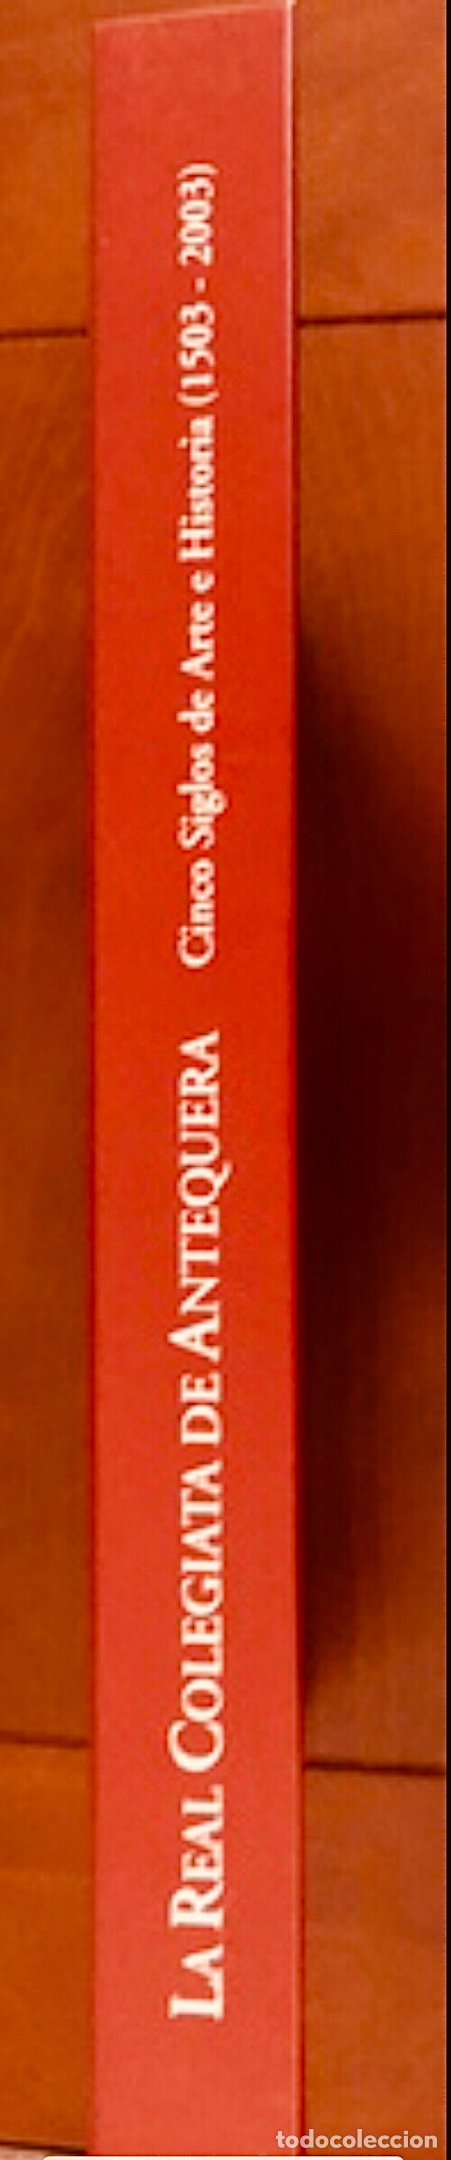 Libros: Real Colegiata de Antequera V Centenario Obra Monográfica - Foto 2 - 207731125